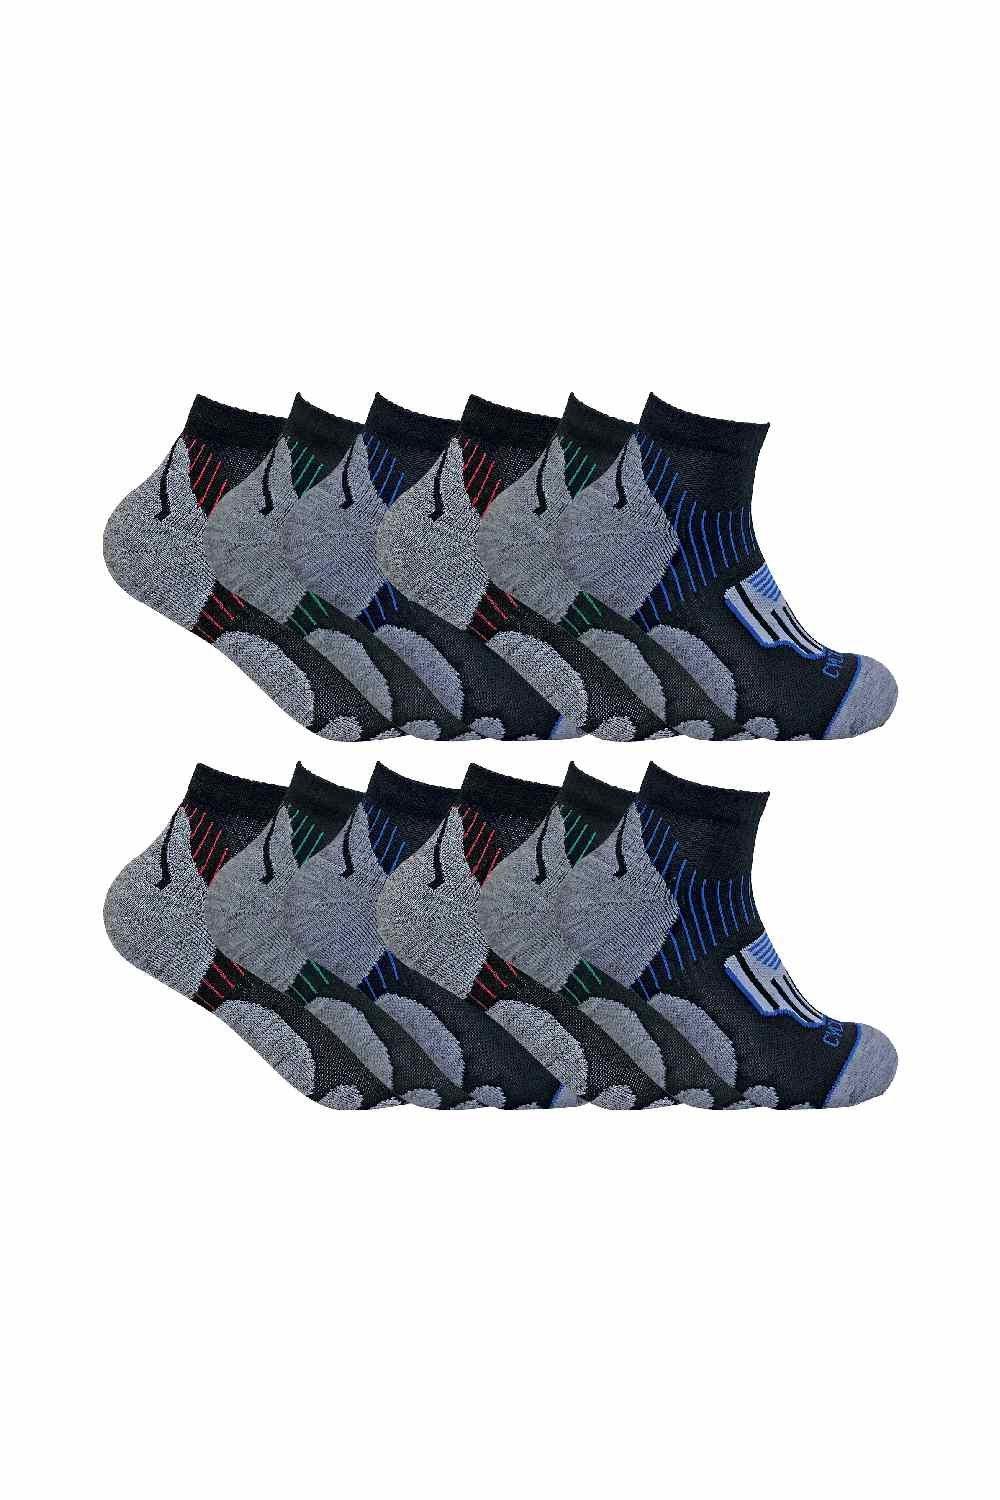 12 Pair Multipack Cycling Socks - Low Cut Sport Socks